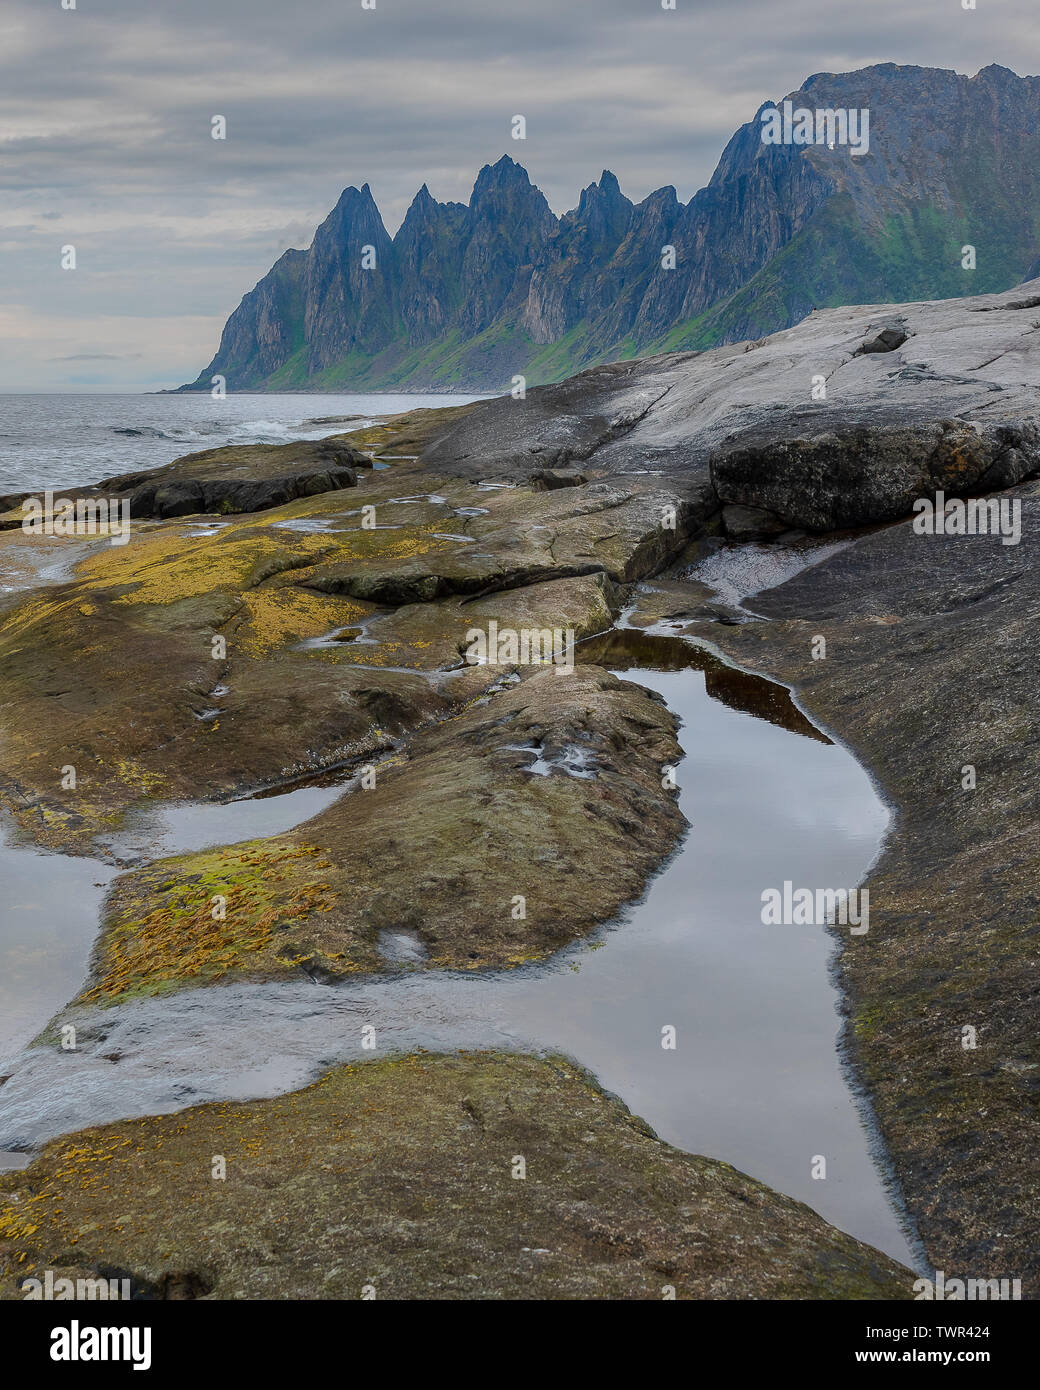 L'isola di Senja nell'artico norvegese è meno alternativa popolare alle Lofoten con vedute mozzafiato del paesaggio di montagna e aspre coste naturale Foto Stock